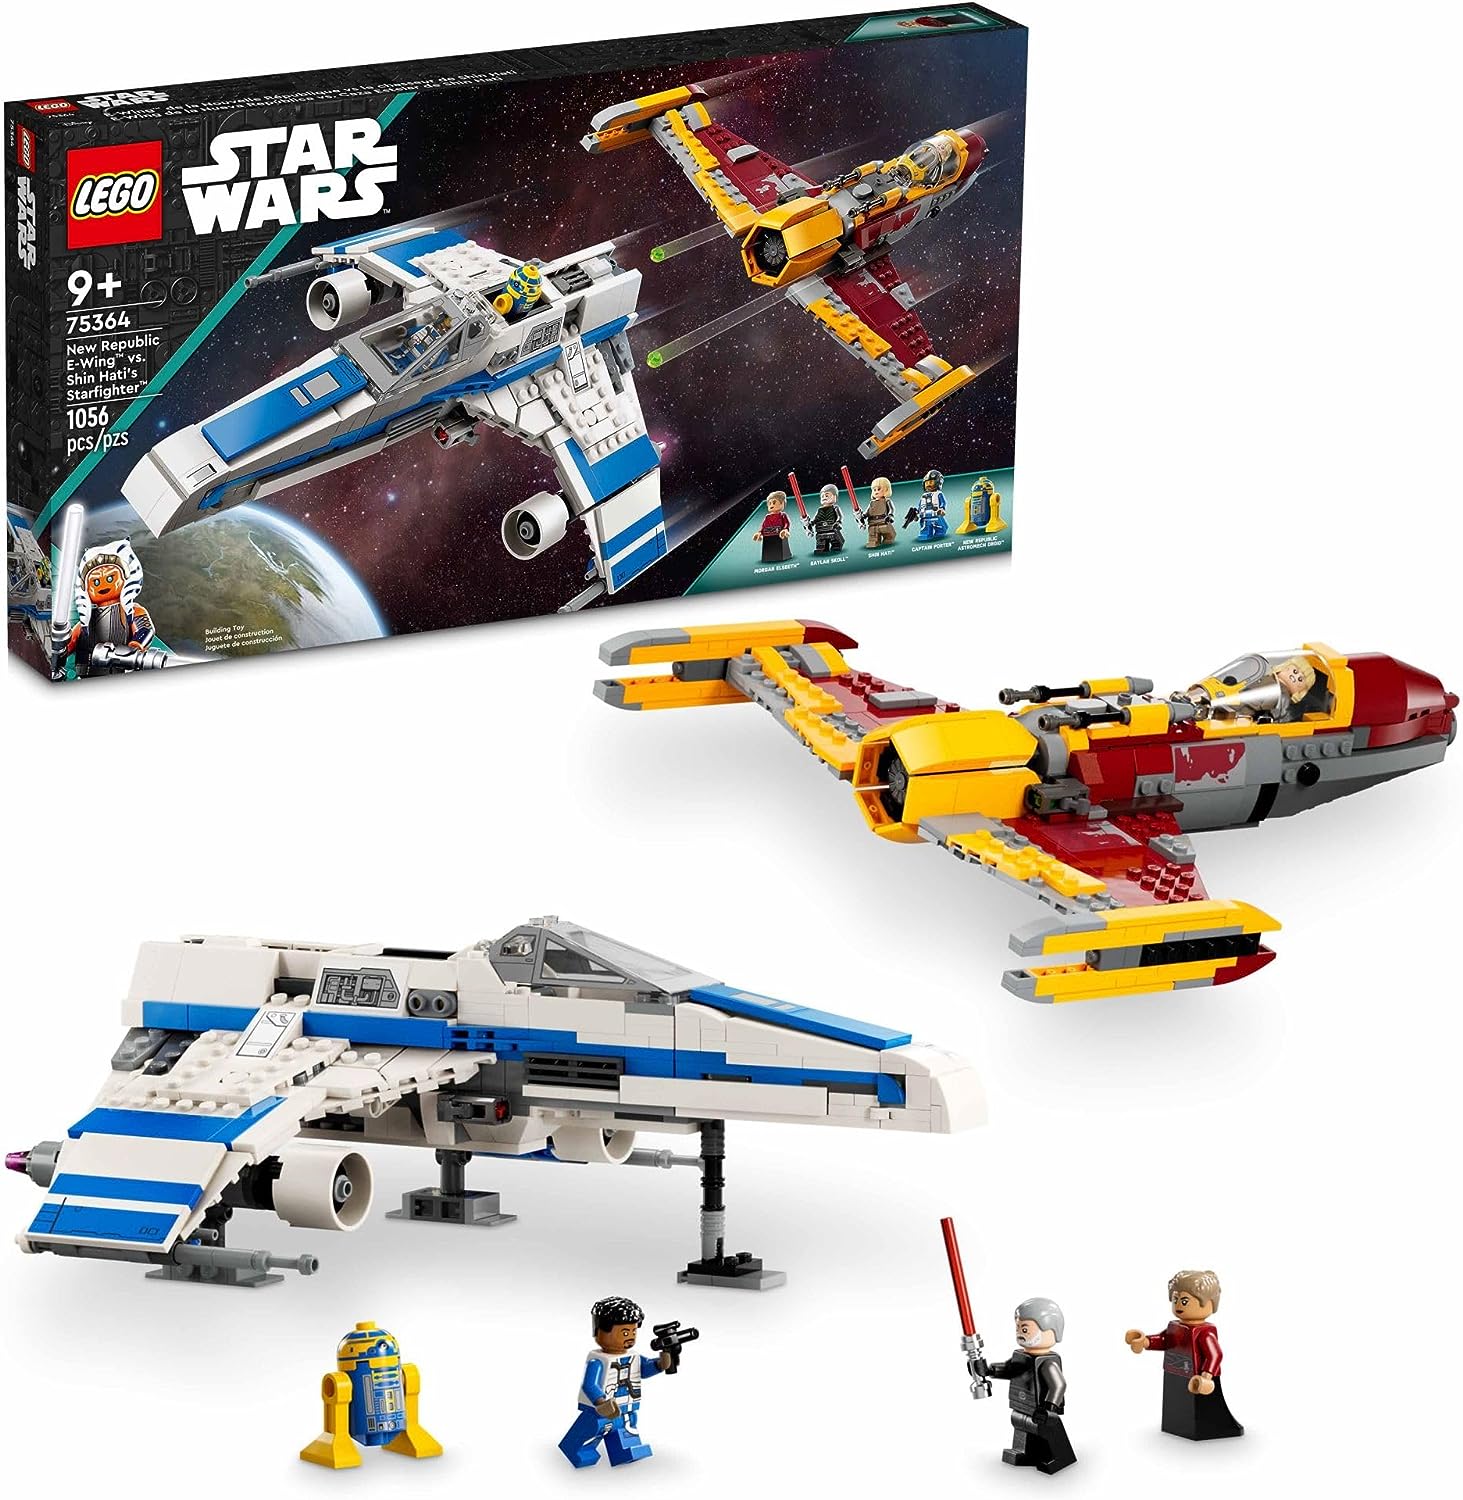 LEGO Star Wars New Republic E-Wing vs. Shin Hati's Starfighter Set 75364